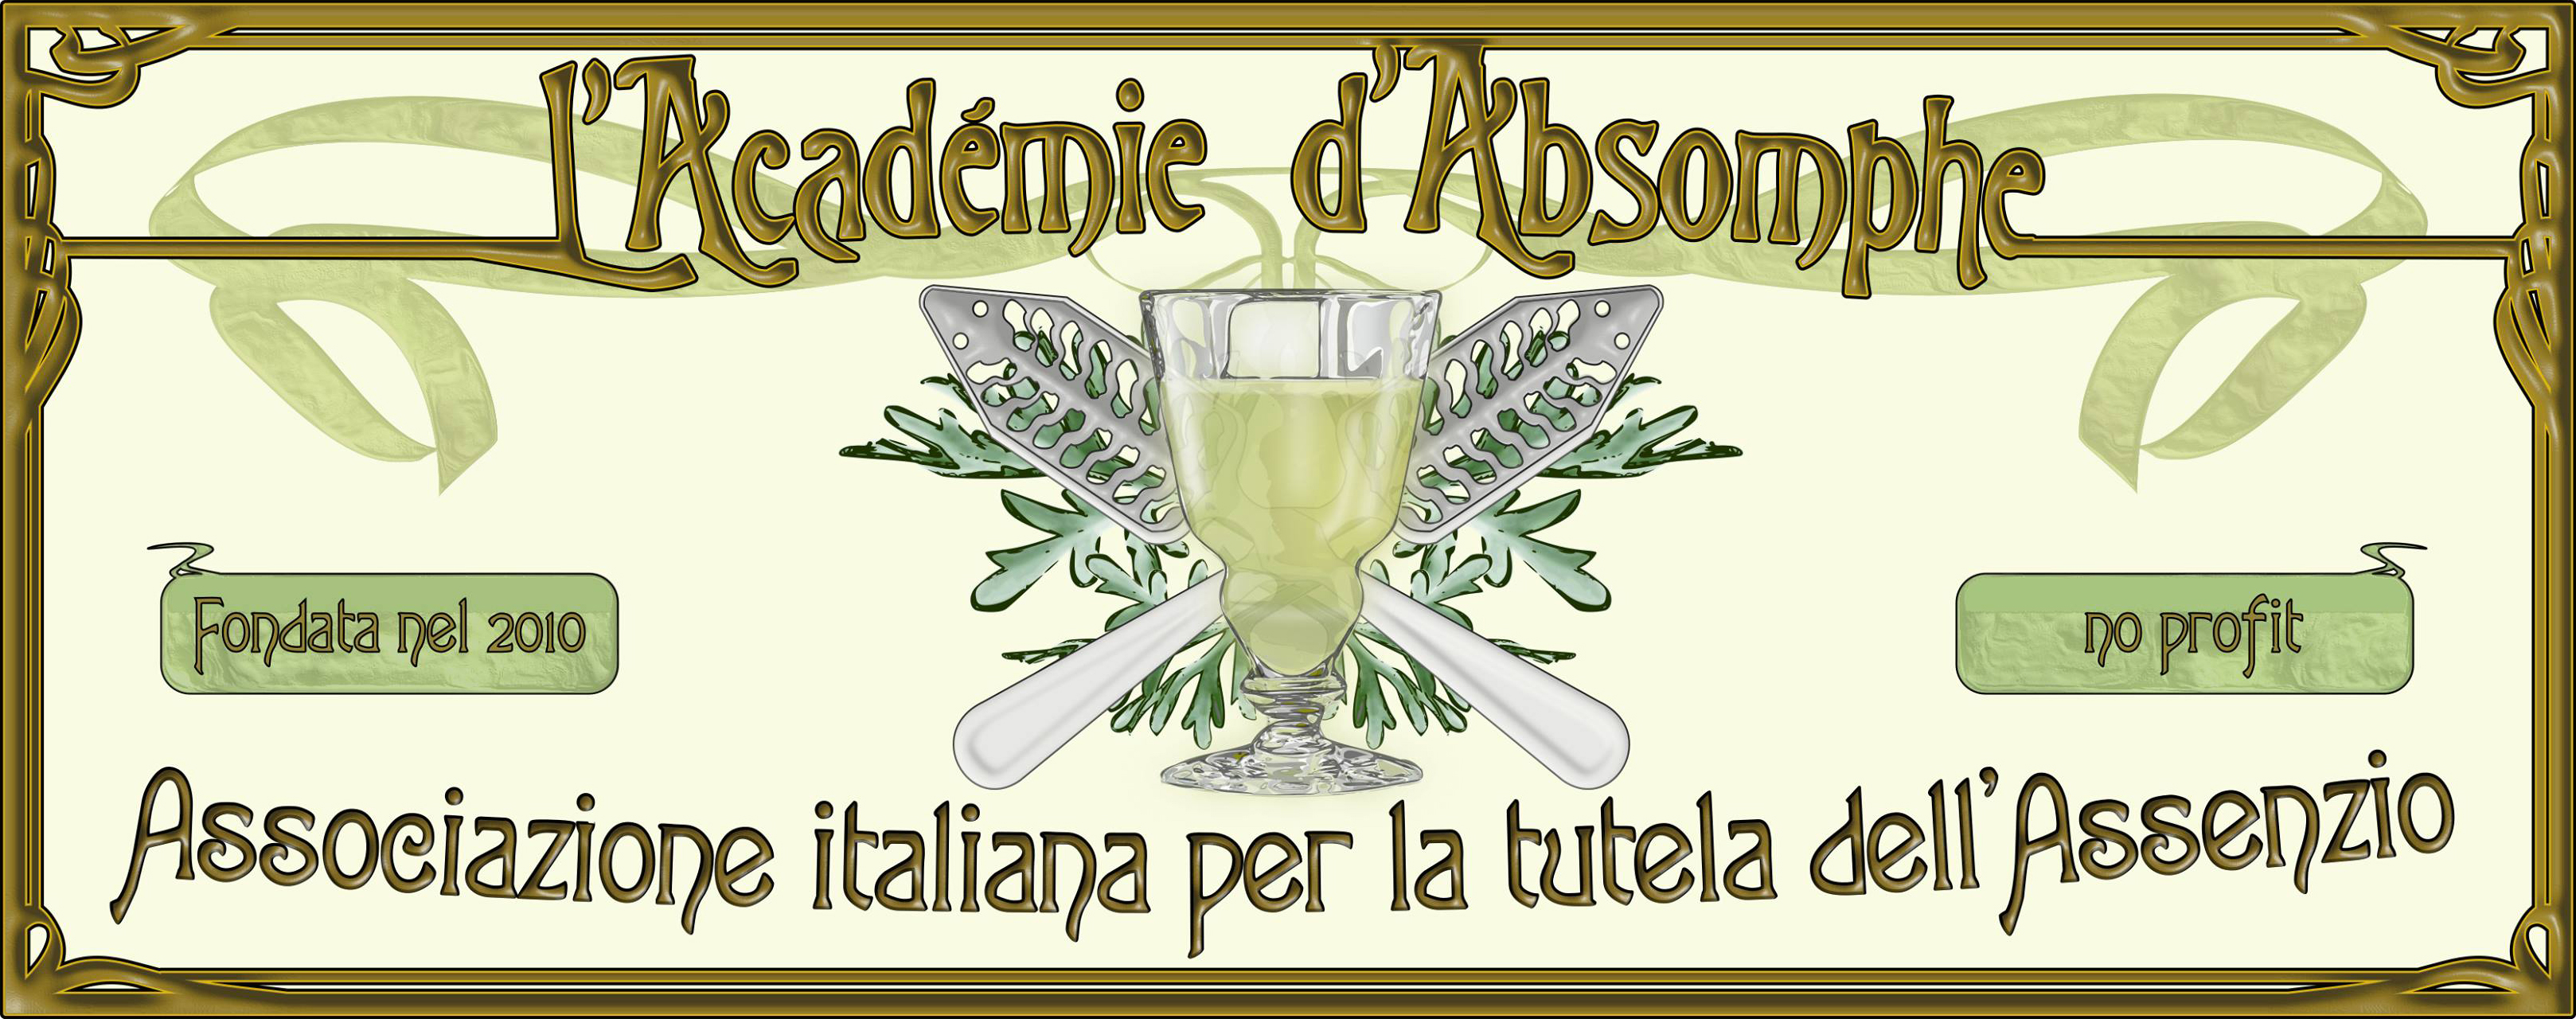 Académie d'Absomphe - Associazione italiana per la tutela dell'Assenzio